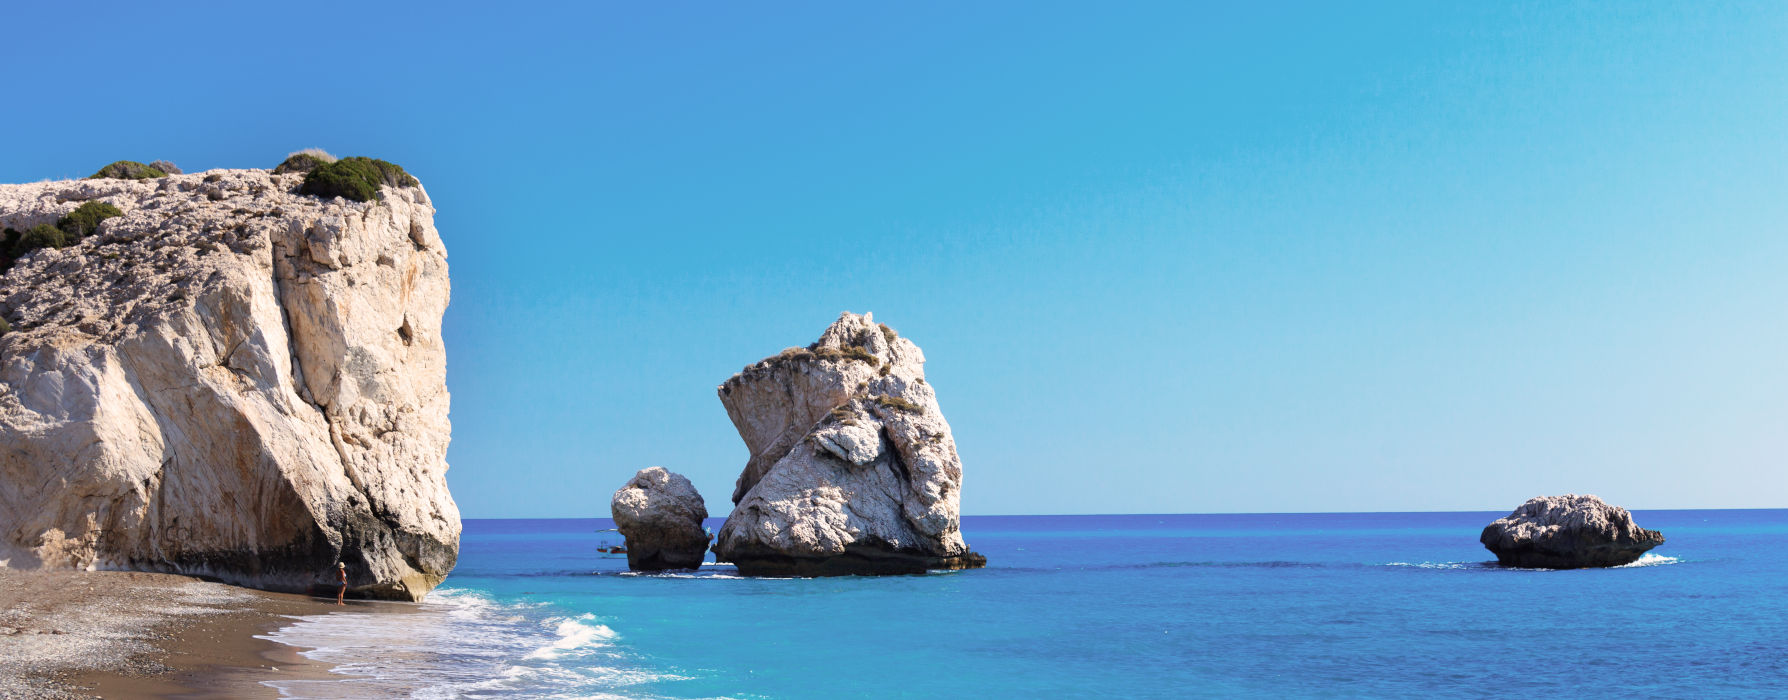 All our Cyprus<br class="hidden-md hidden-lg" /> Summer Holidays